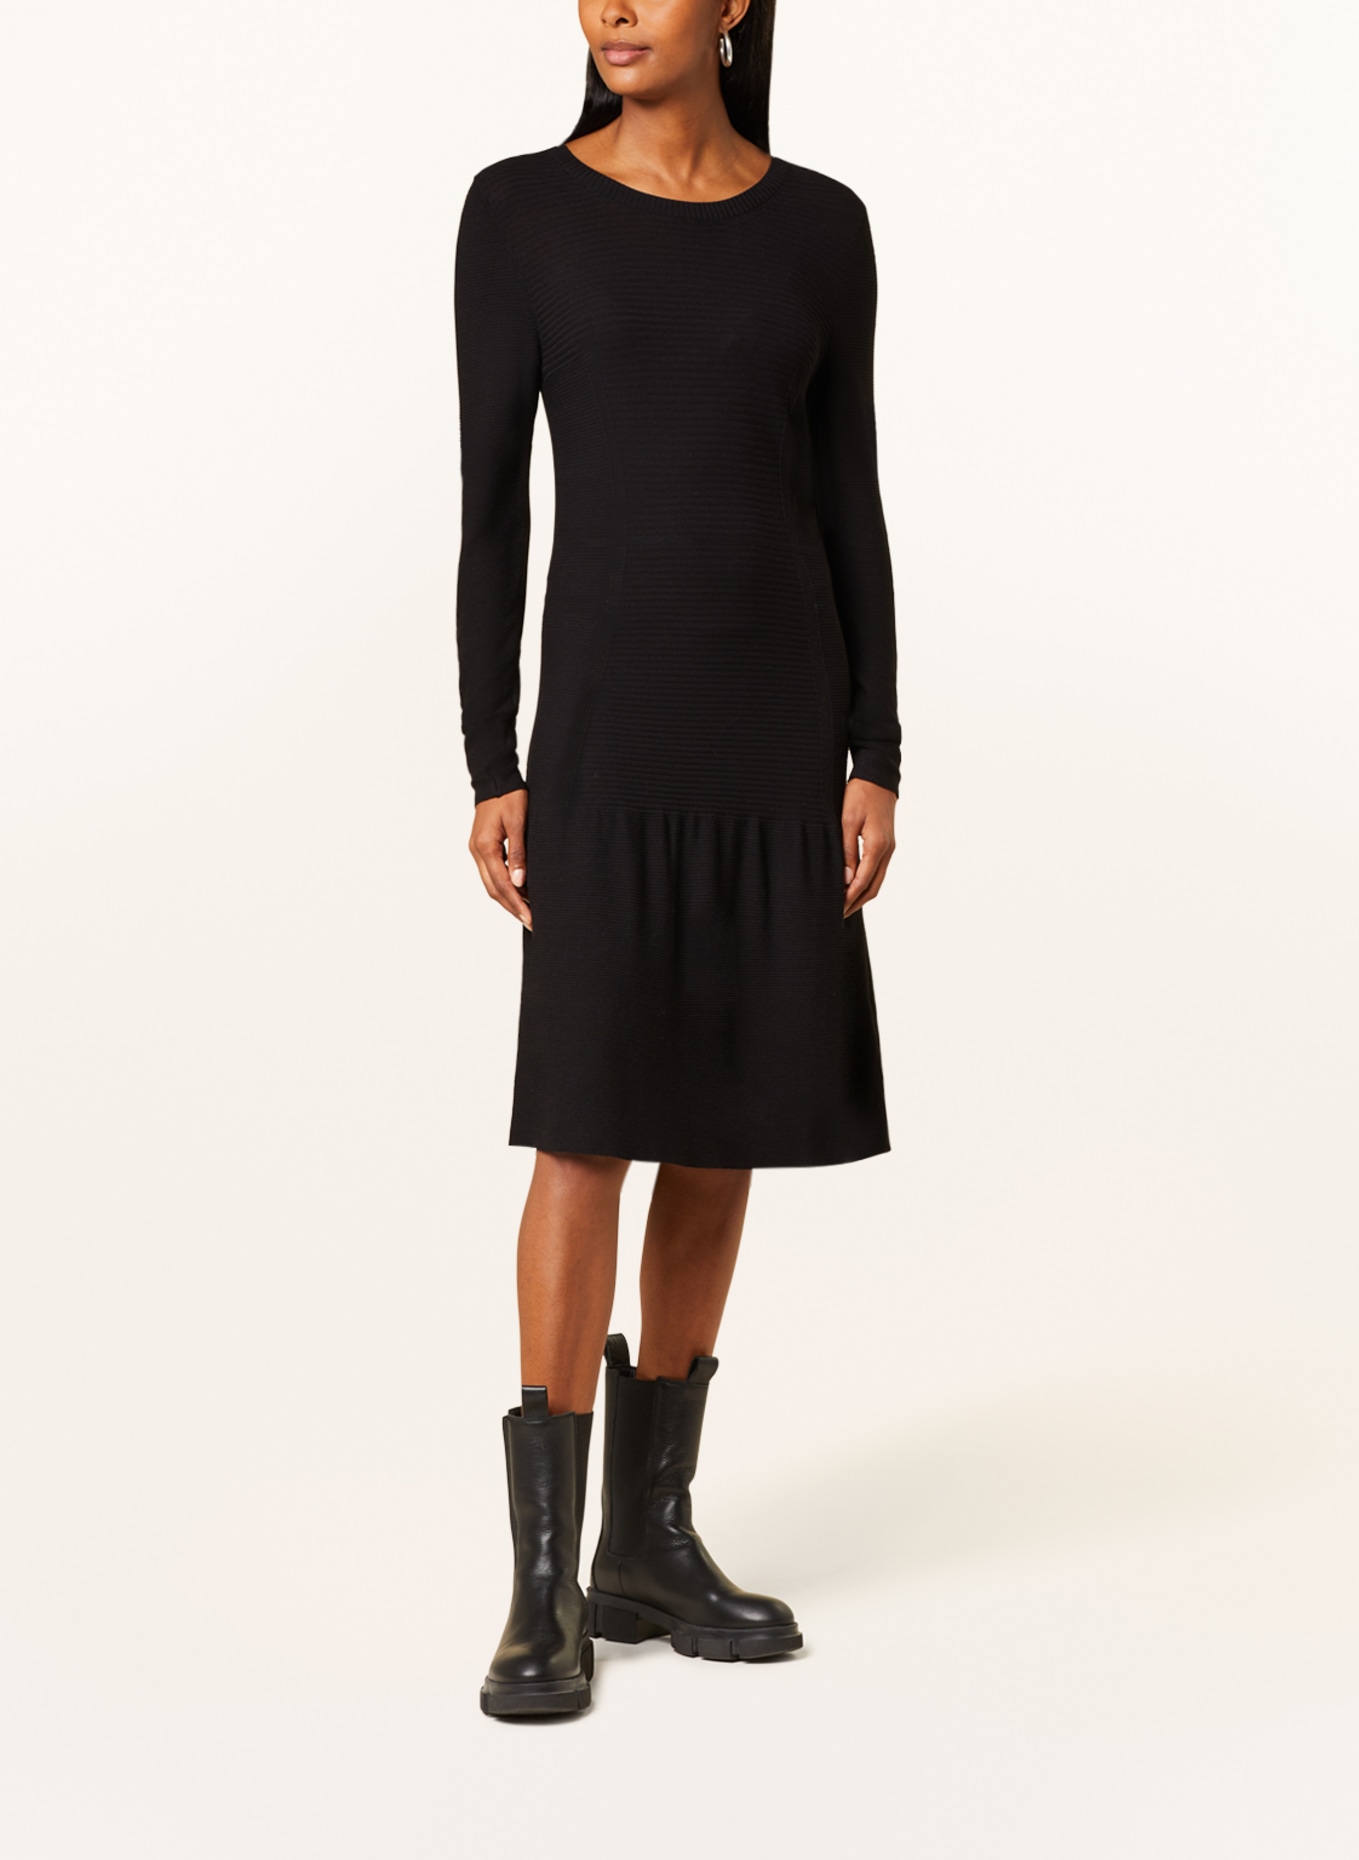 JOOP! Knit dress with frills, Color: BLACK (Image 2)